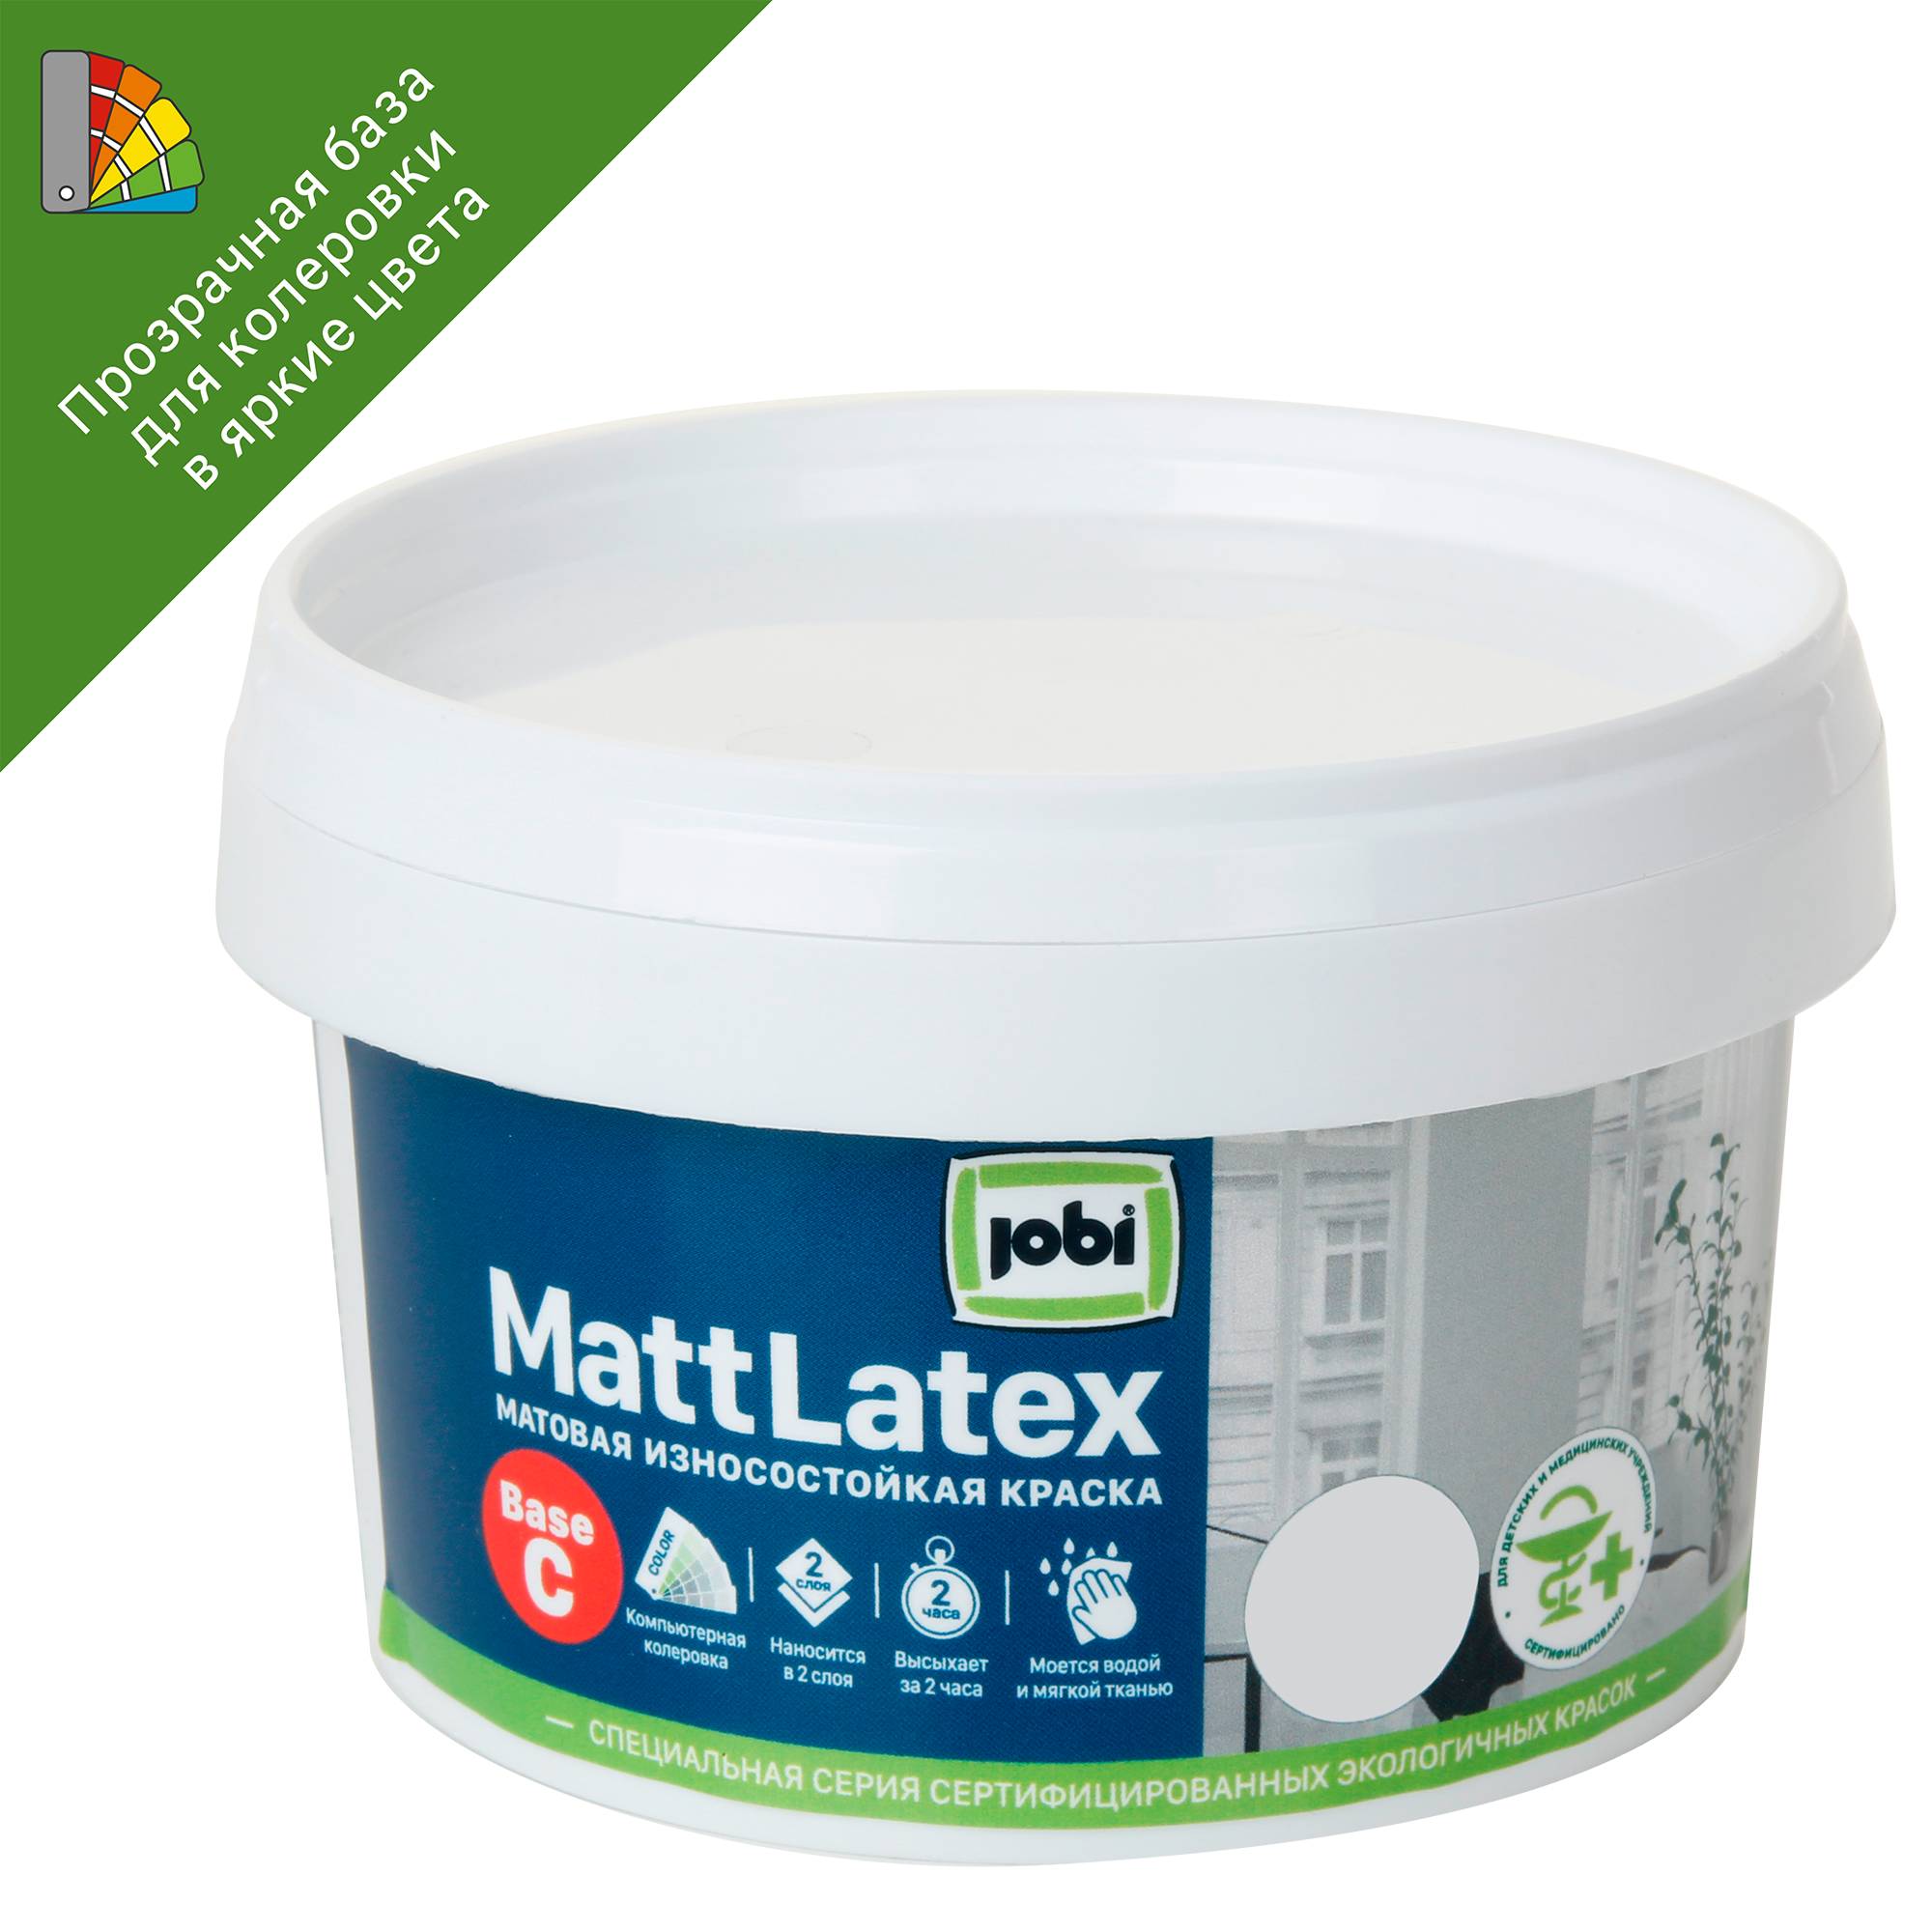 82432436 Краска для колеровки для стен и потолков «Mattlatex» прозрачная база C 0.25 л STLM-0027285 JOBI